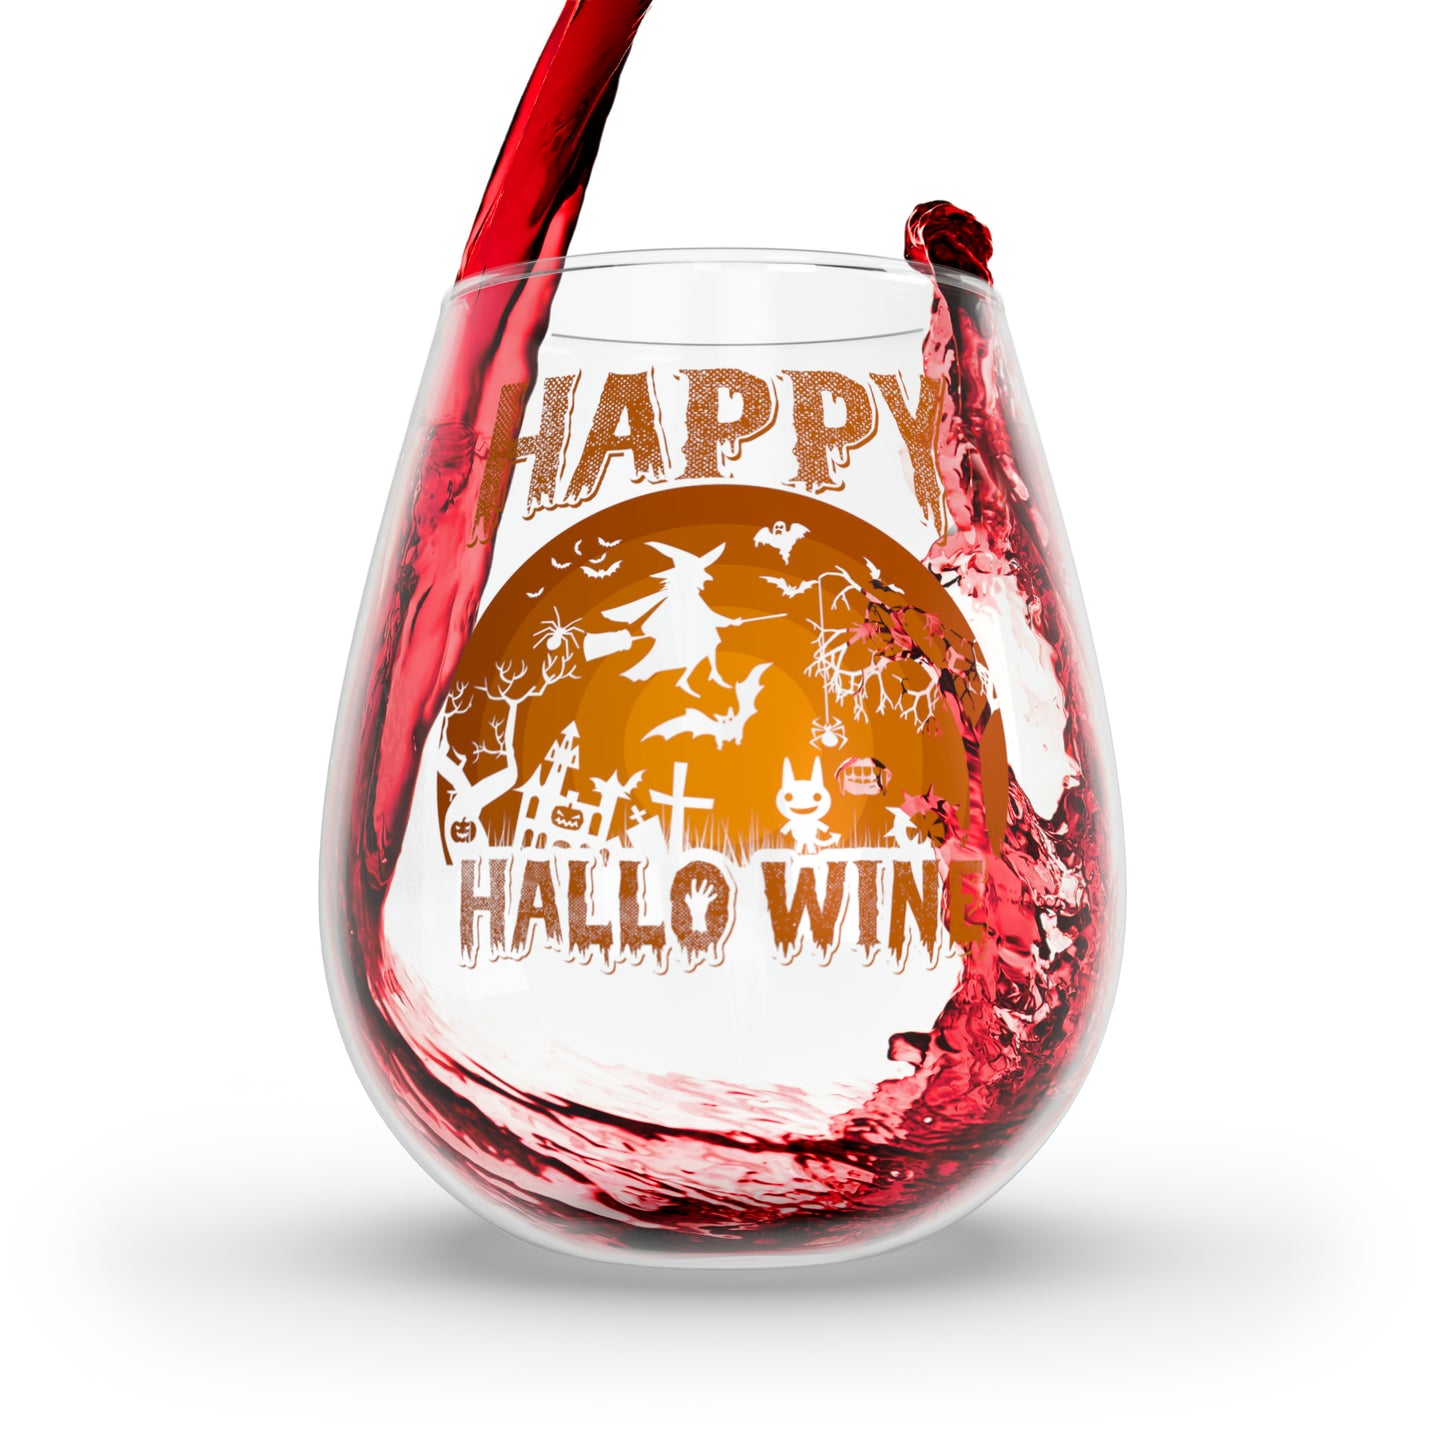 Happy Hallo Wine Stemless Wine Glass